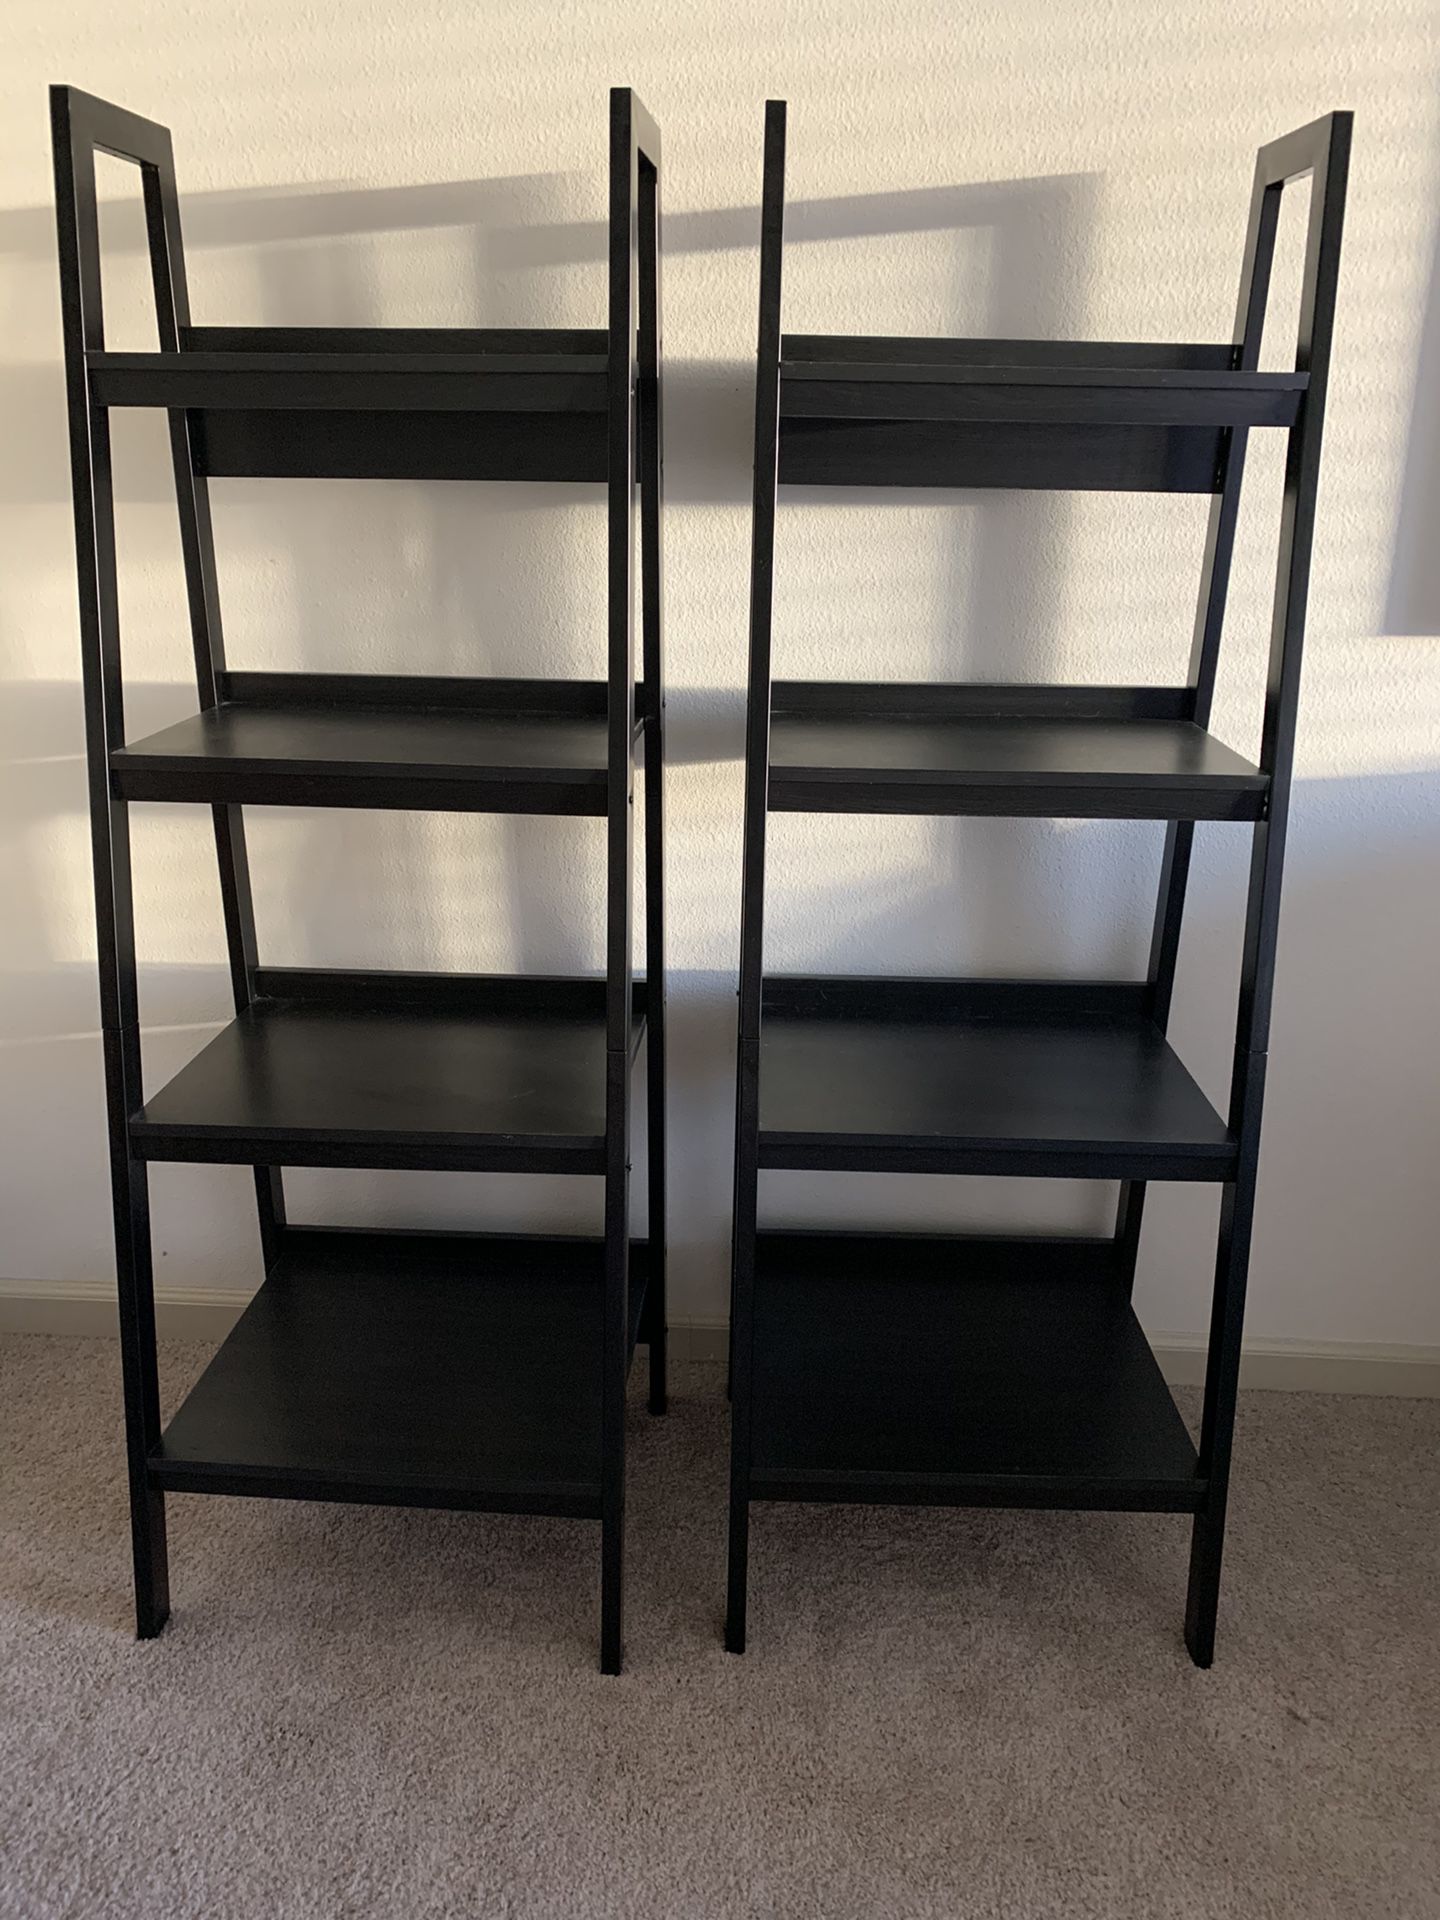 2 Black Ladder Bookshelves